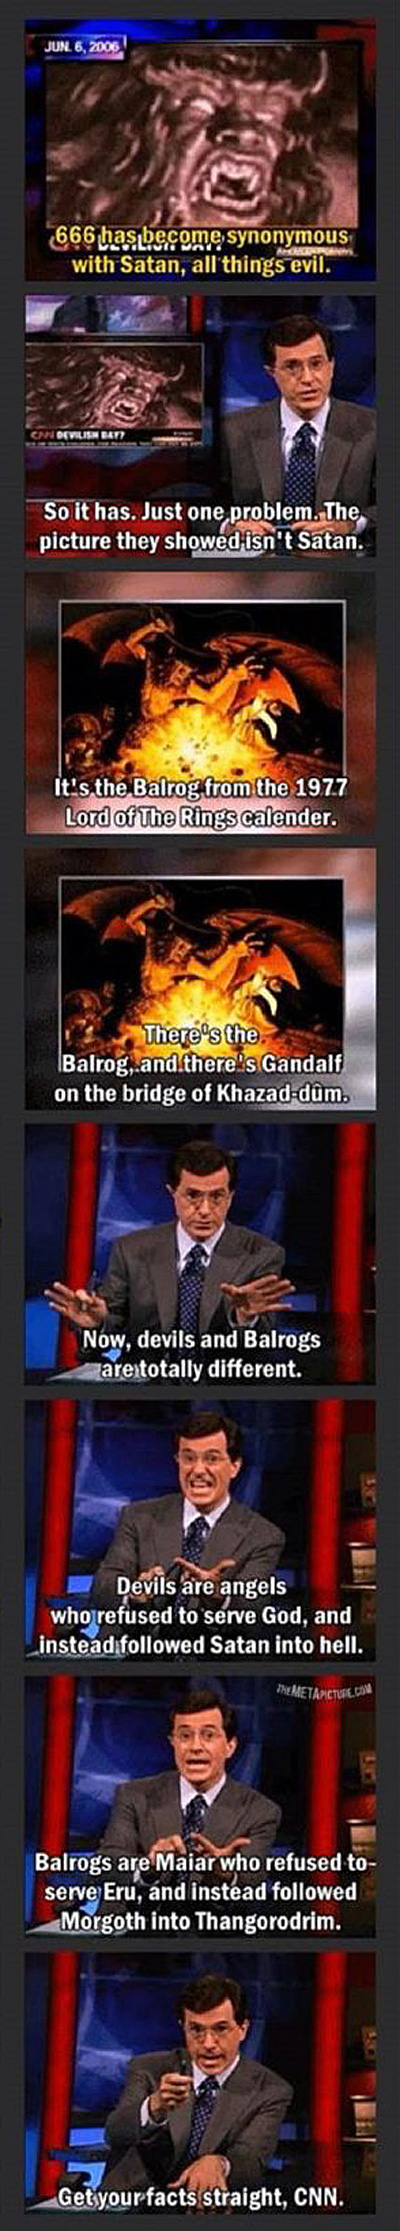 Stephen Colbert Sets CNN Straight on Devils vs Balrogs